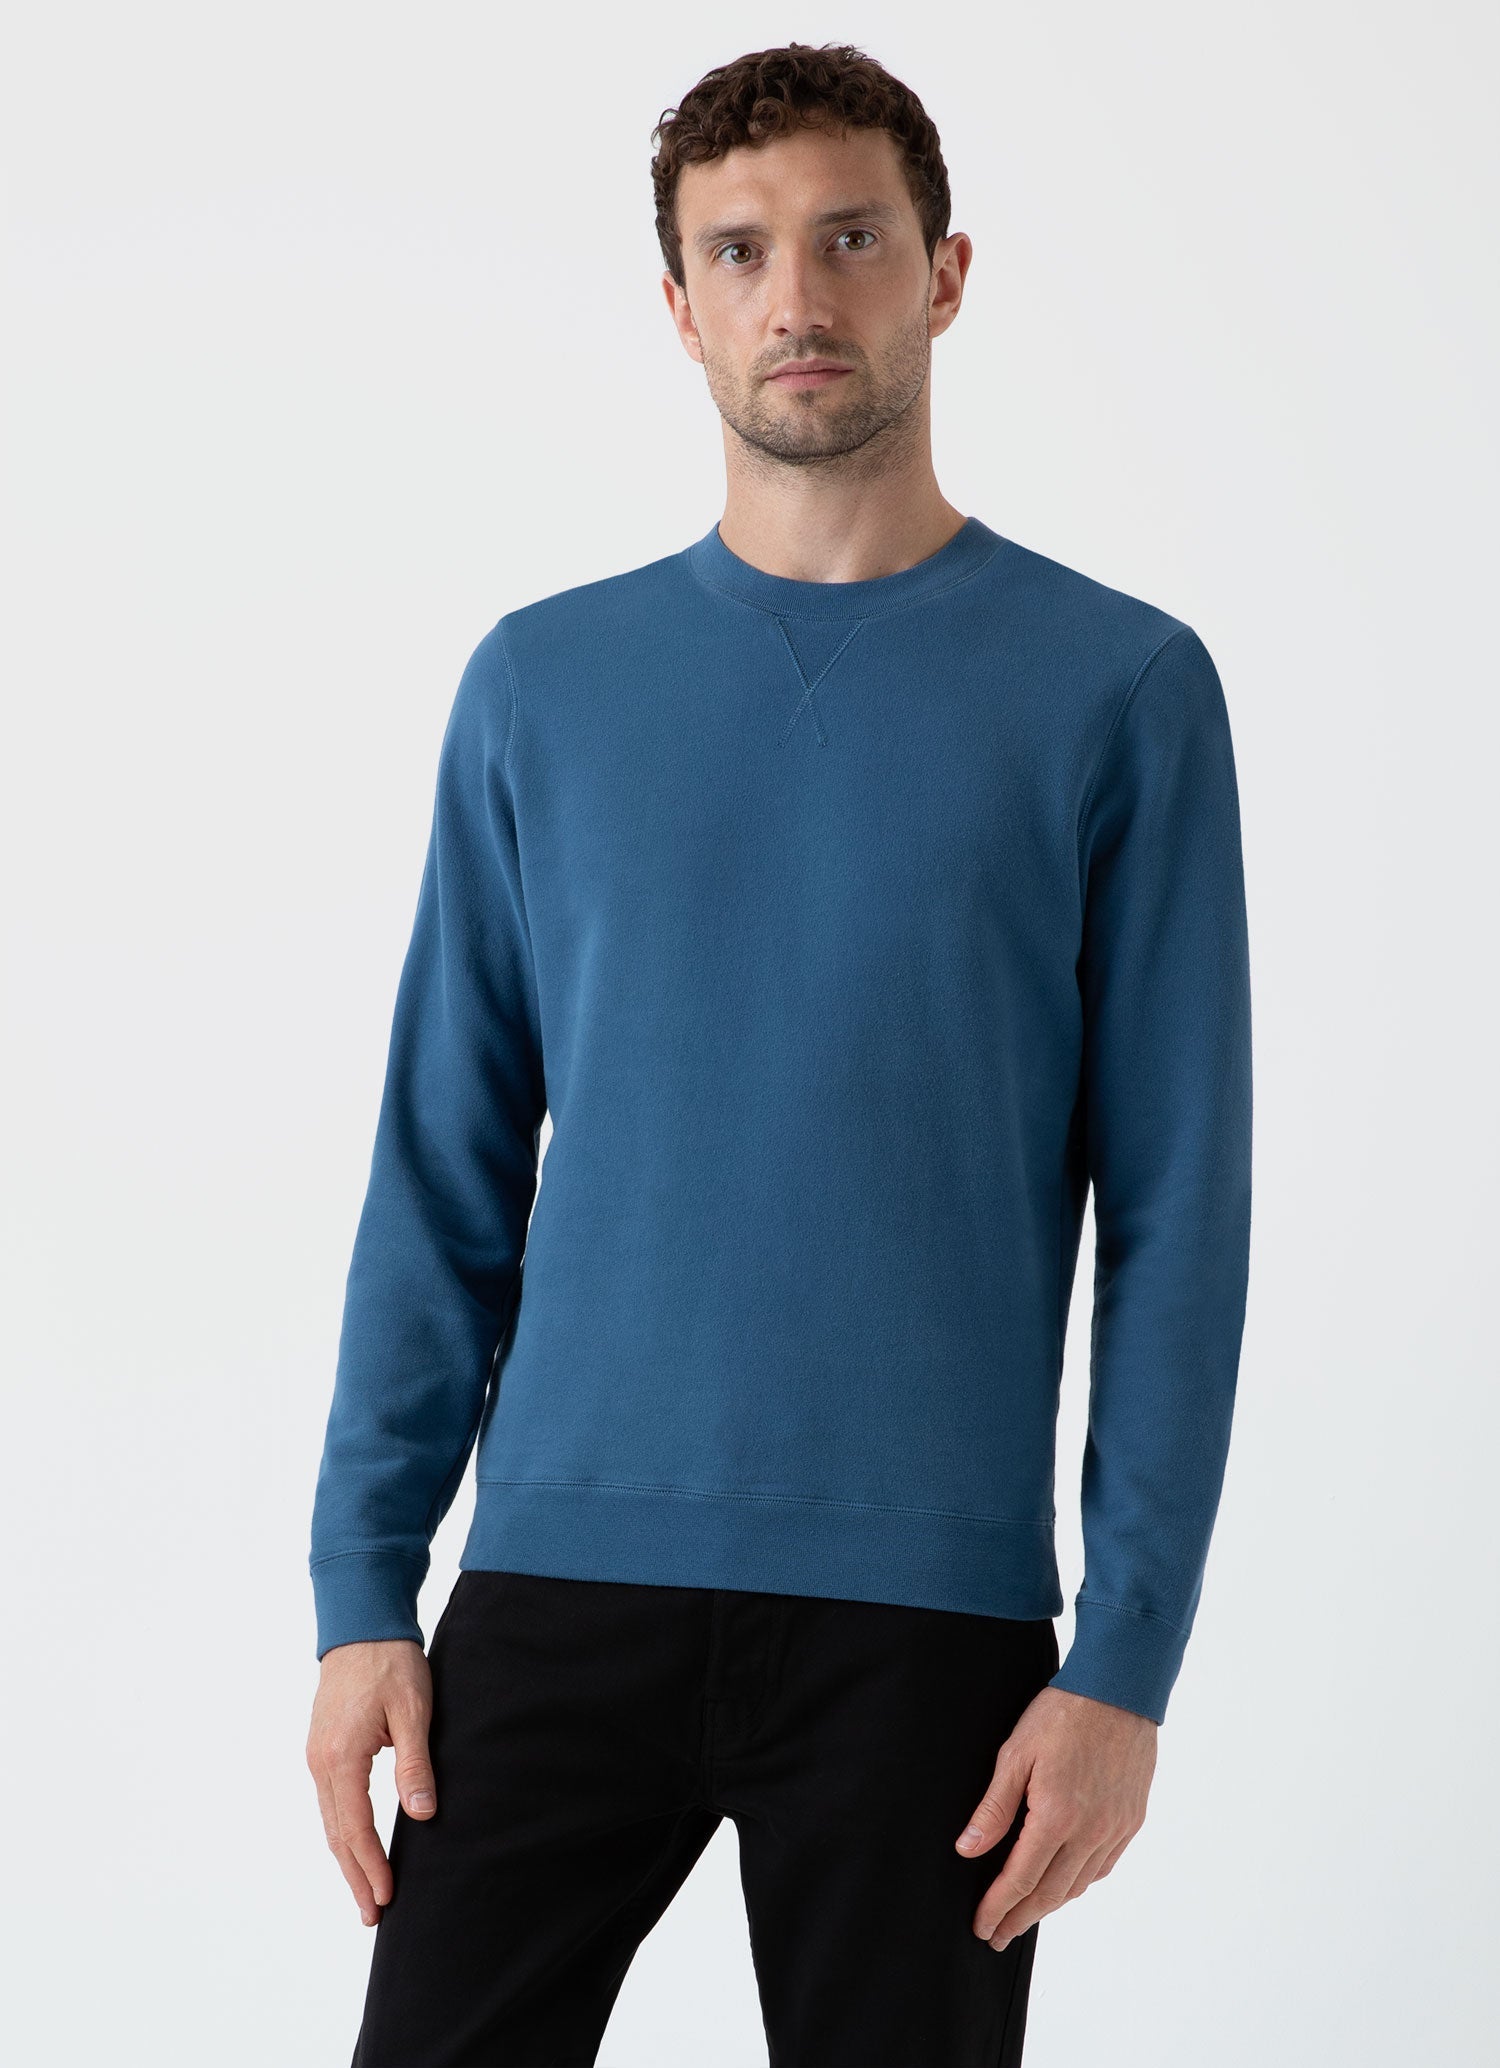 Men's Sweatshirts & Sweatpants | Sunspel